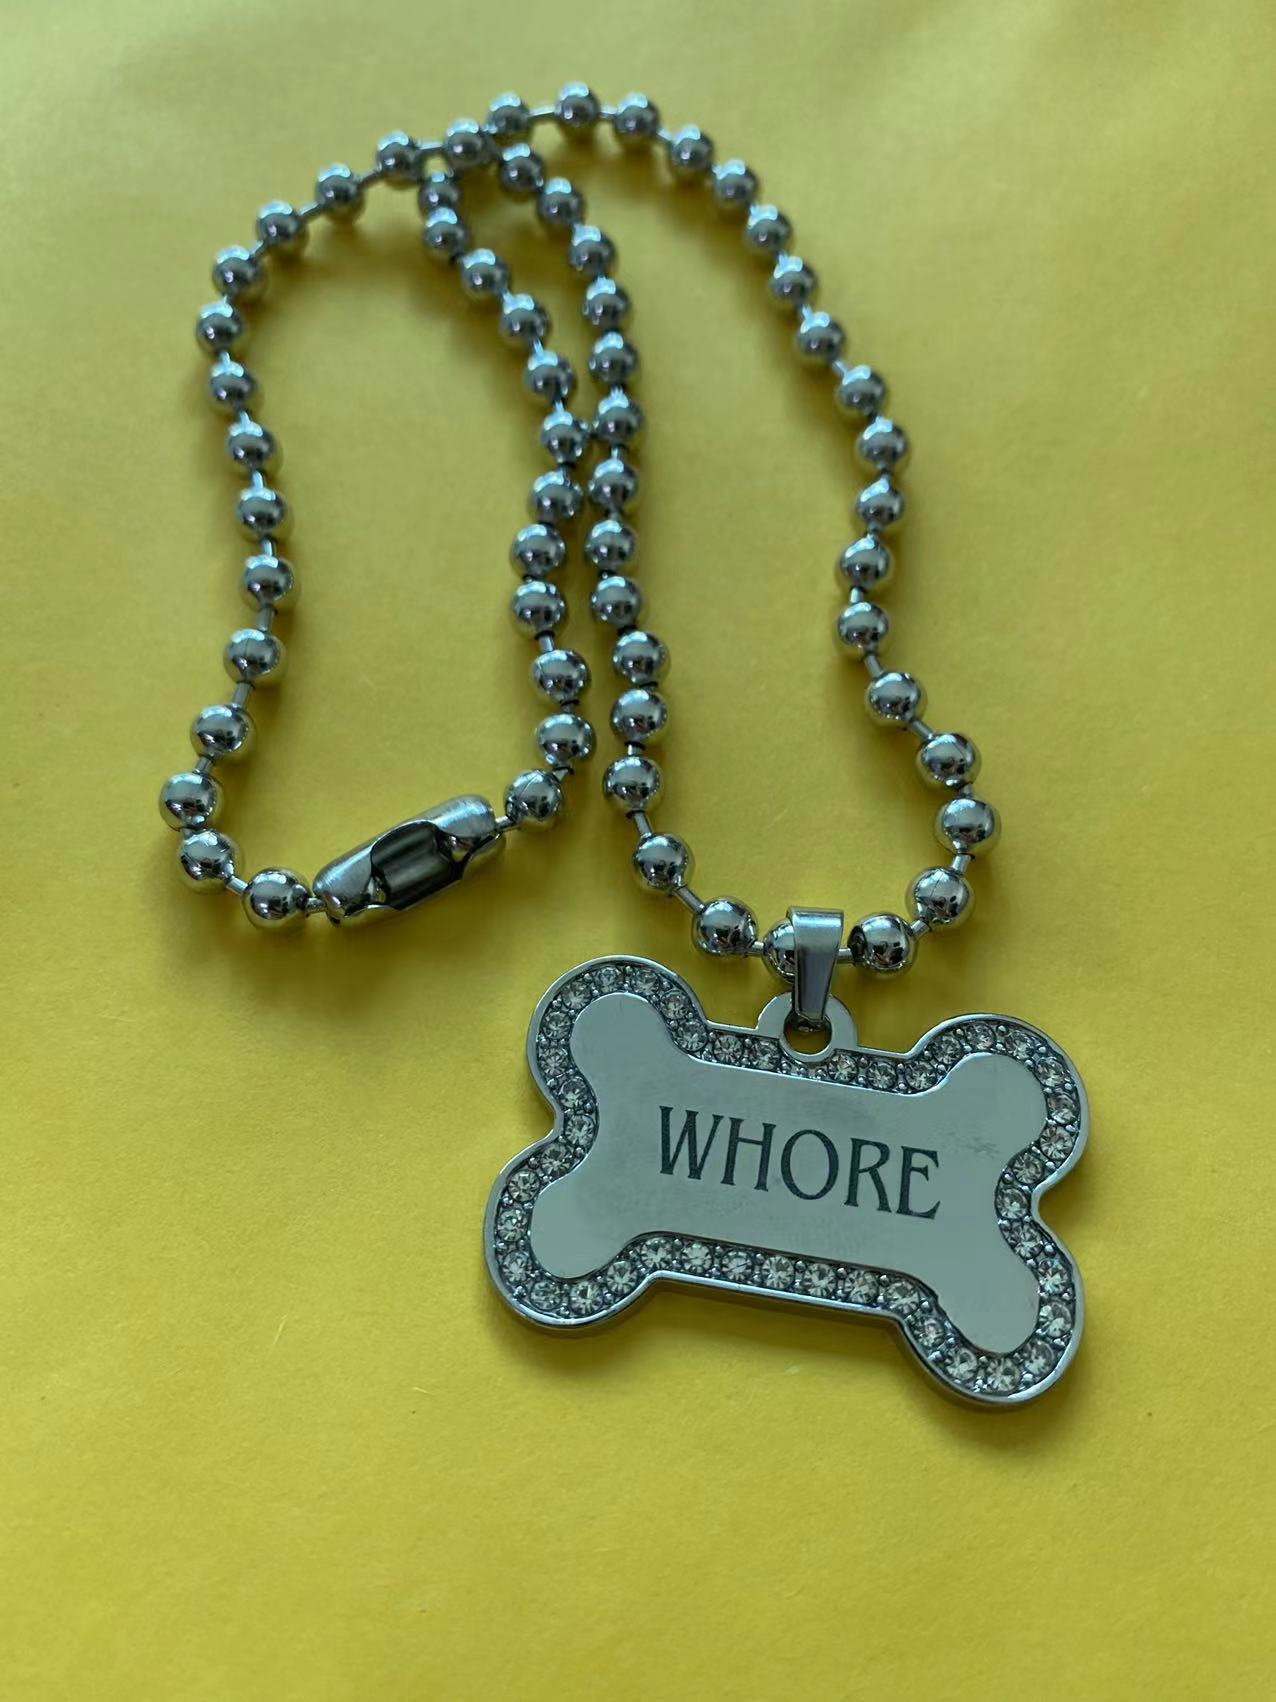 "Whore" Dog Bone Necklace by White Market